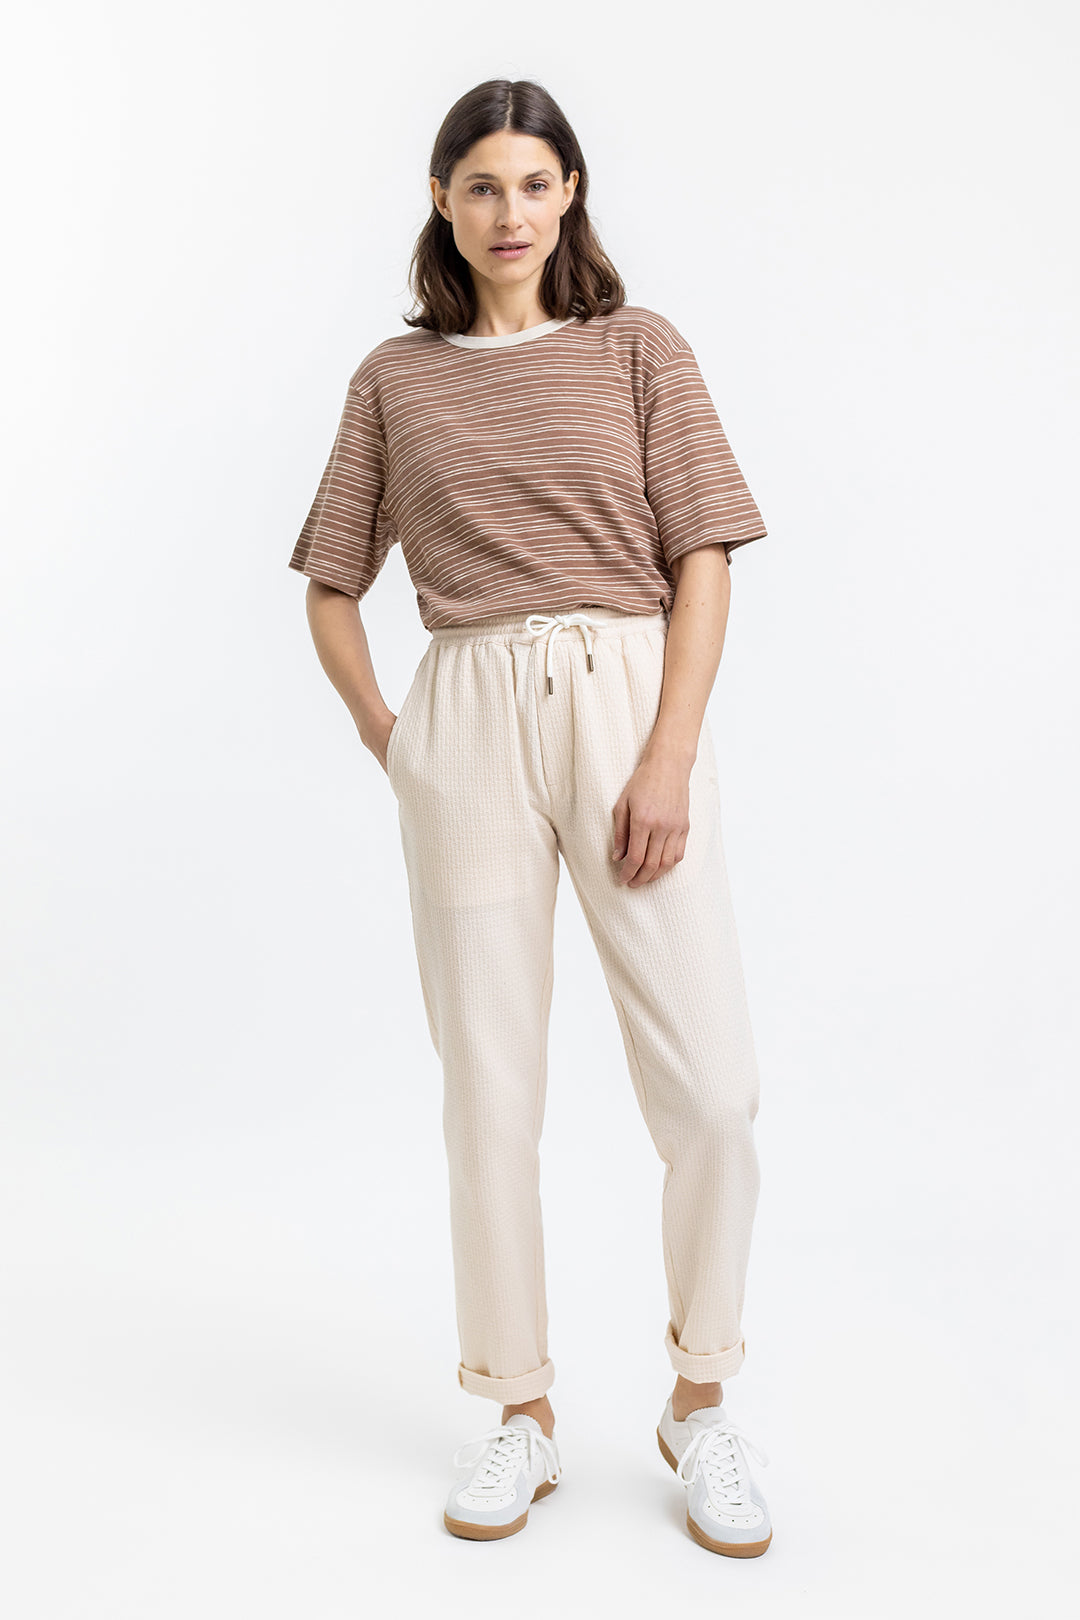 Frauen Model trägt das gestreifte Rotholz T-Shirt aus Baumwolle in Braun